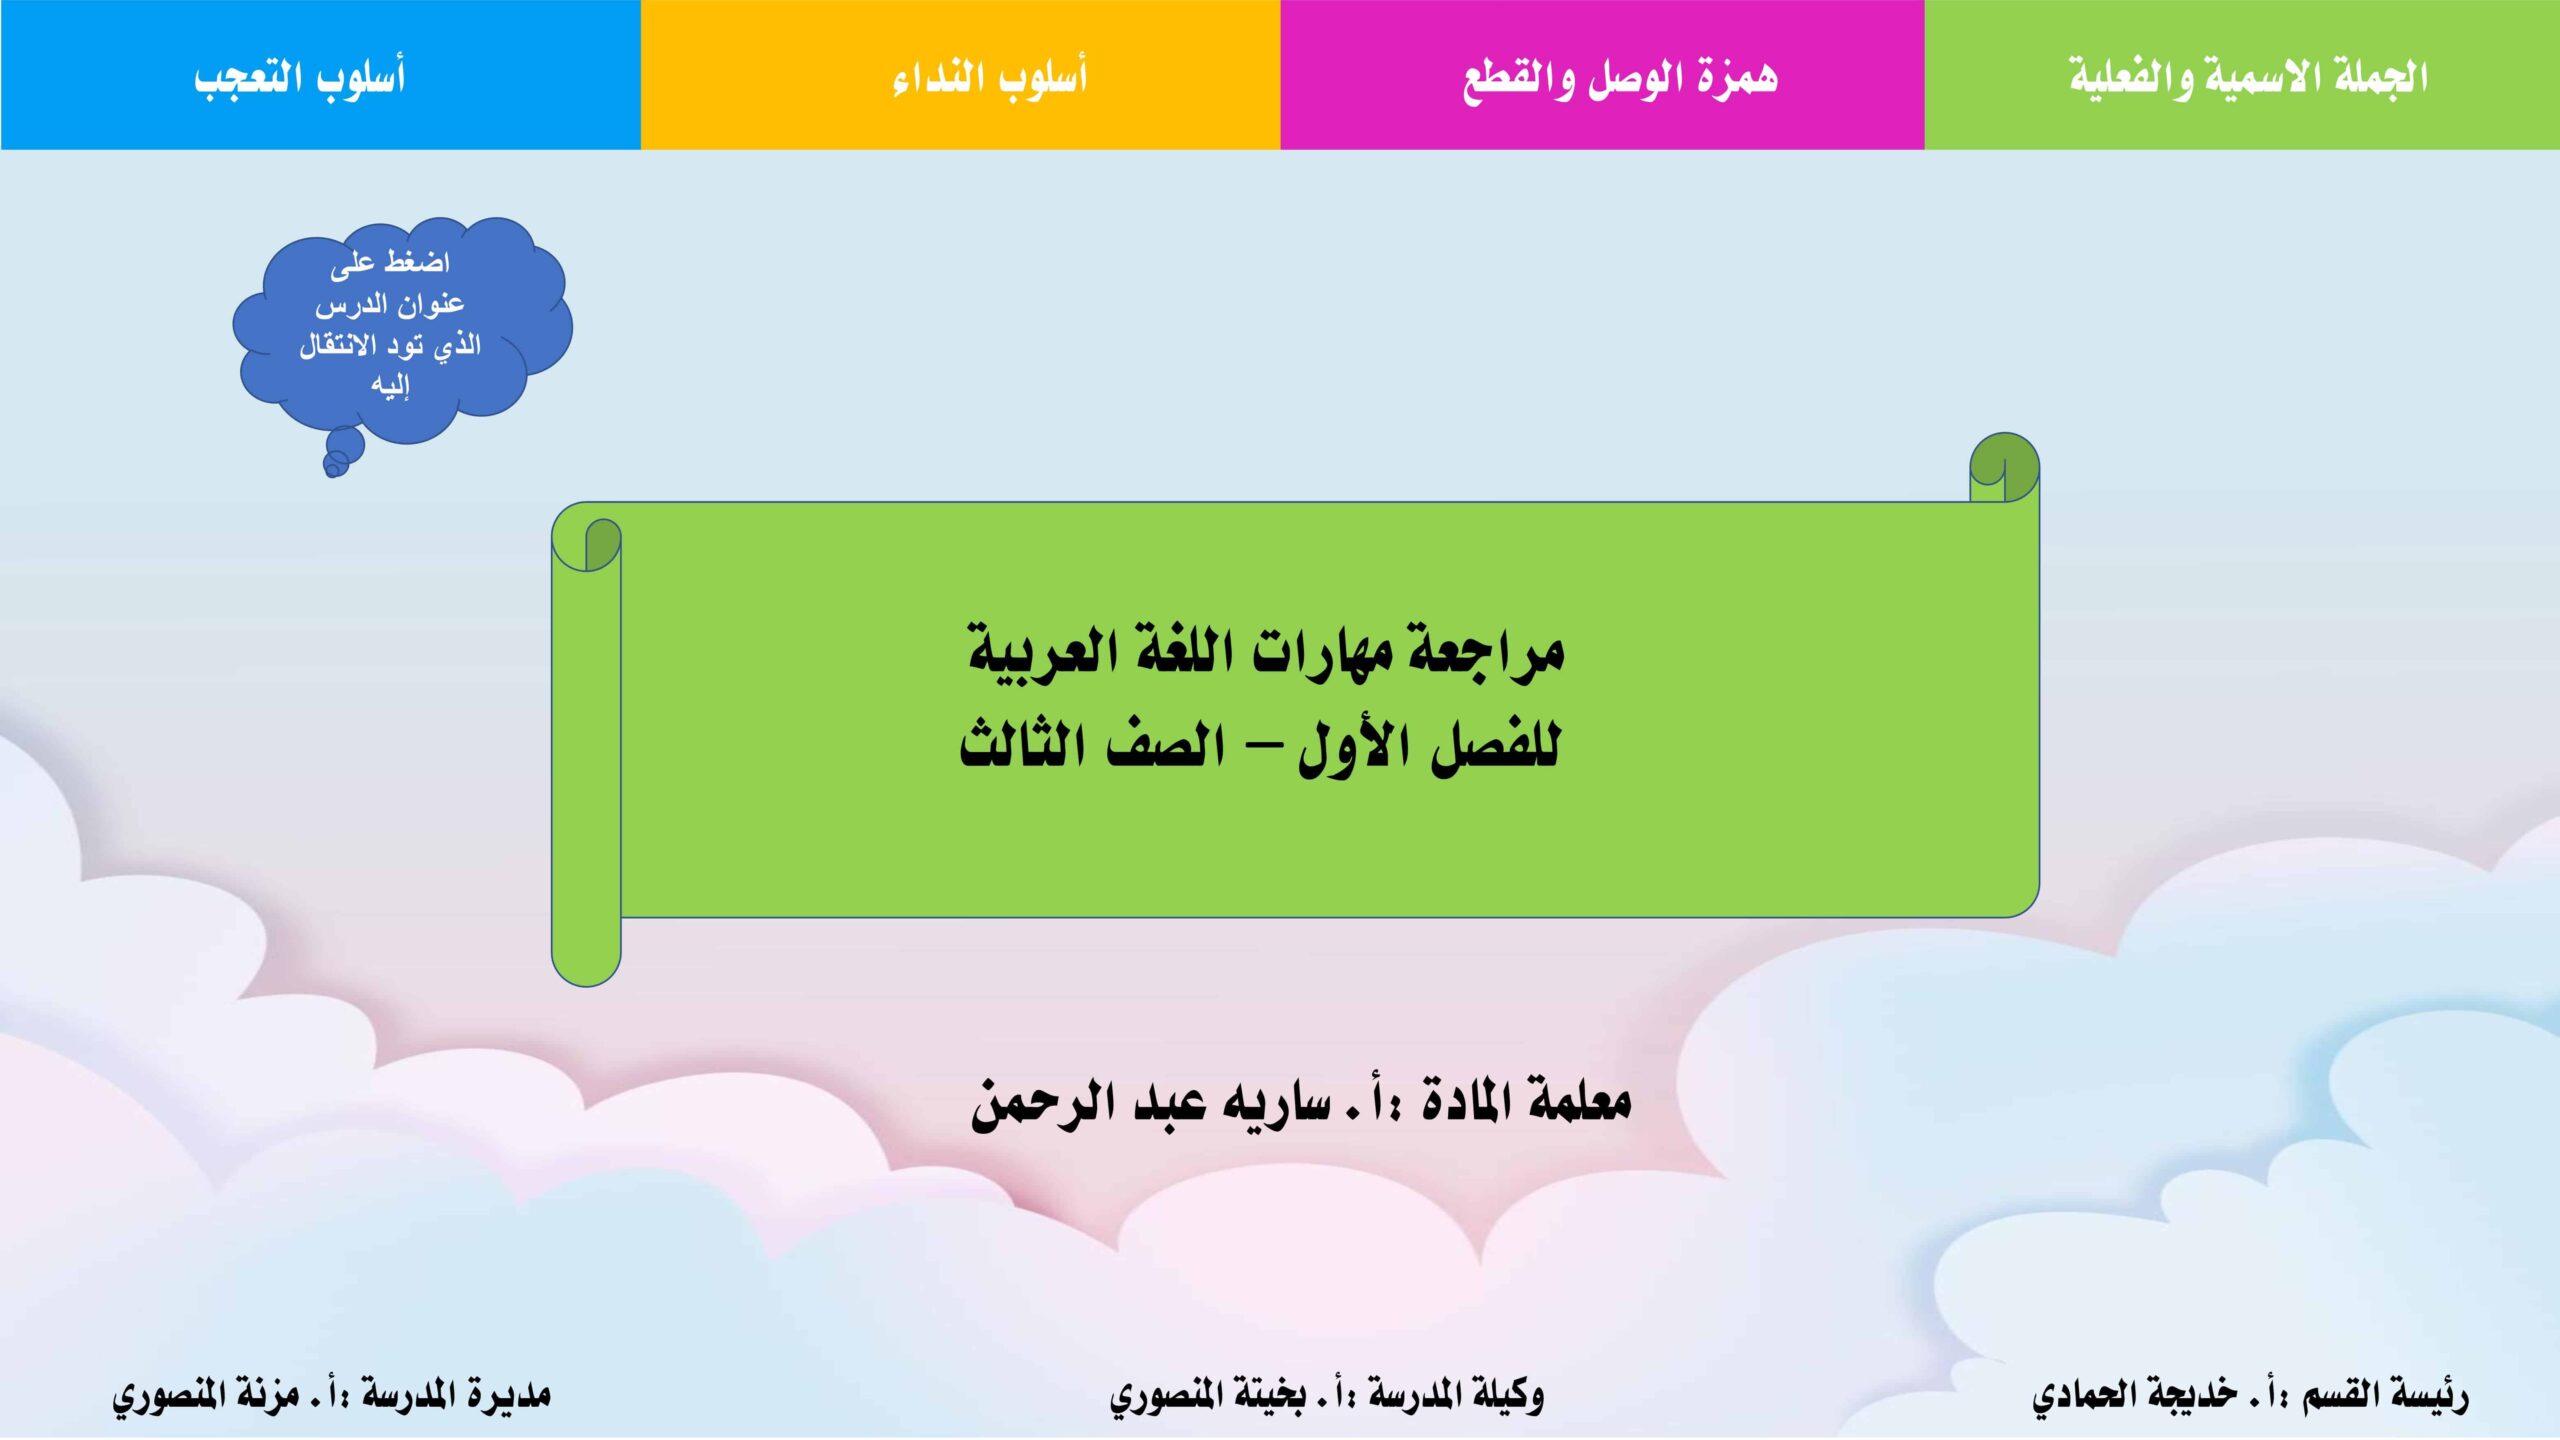 مراجعة مهارات اللغة العربية الصف الثالث